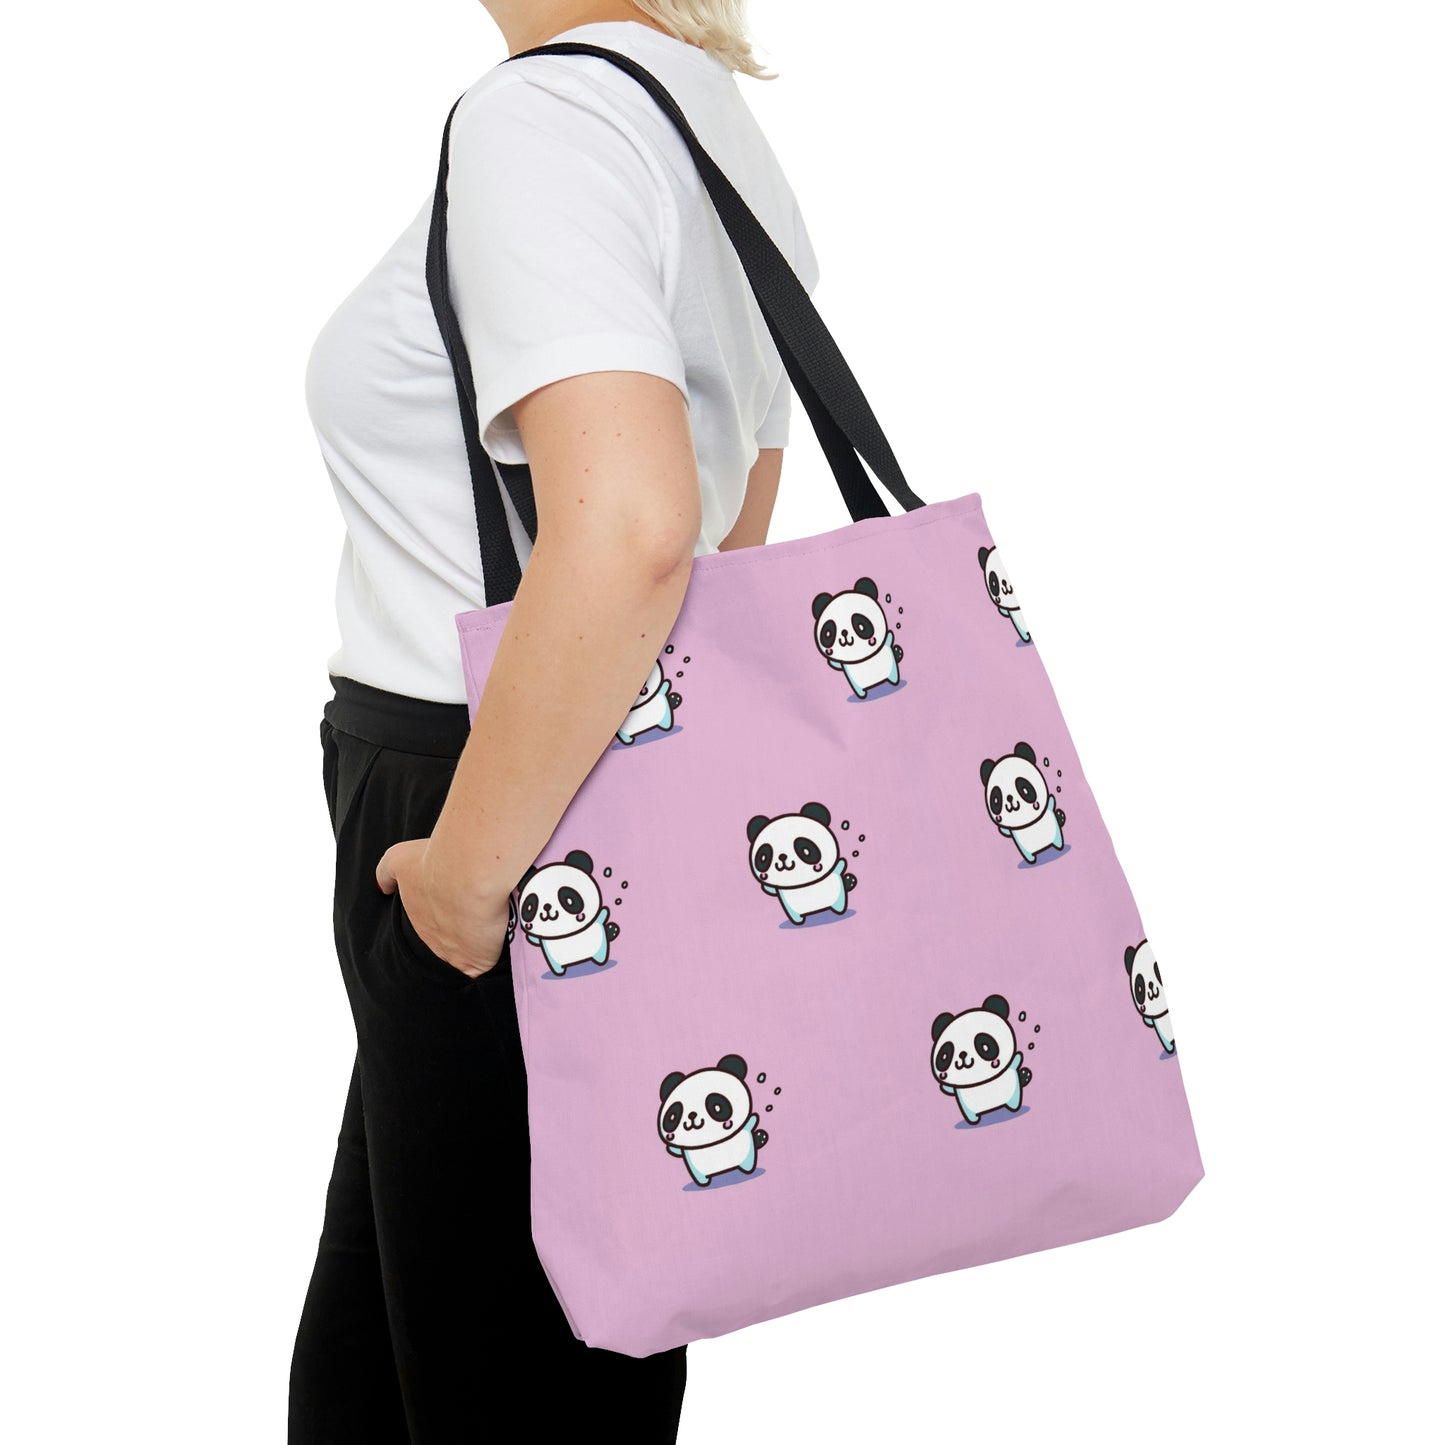 Pink Panda Pattern Tote Bag